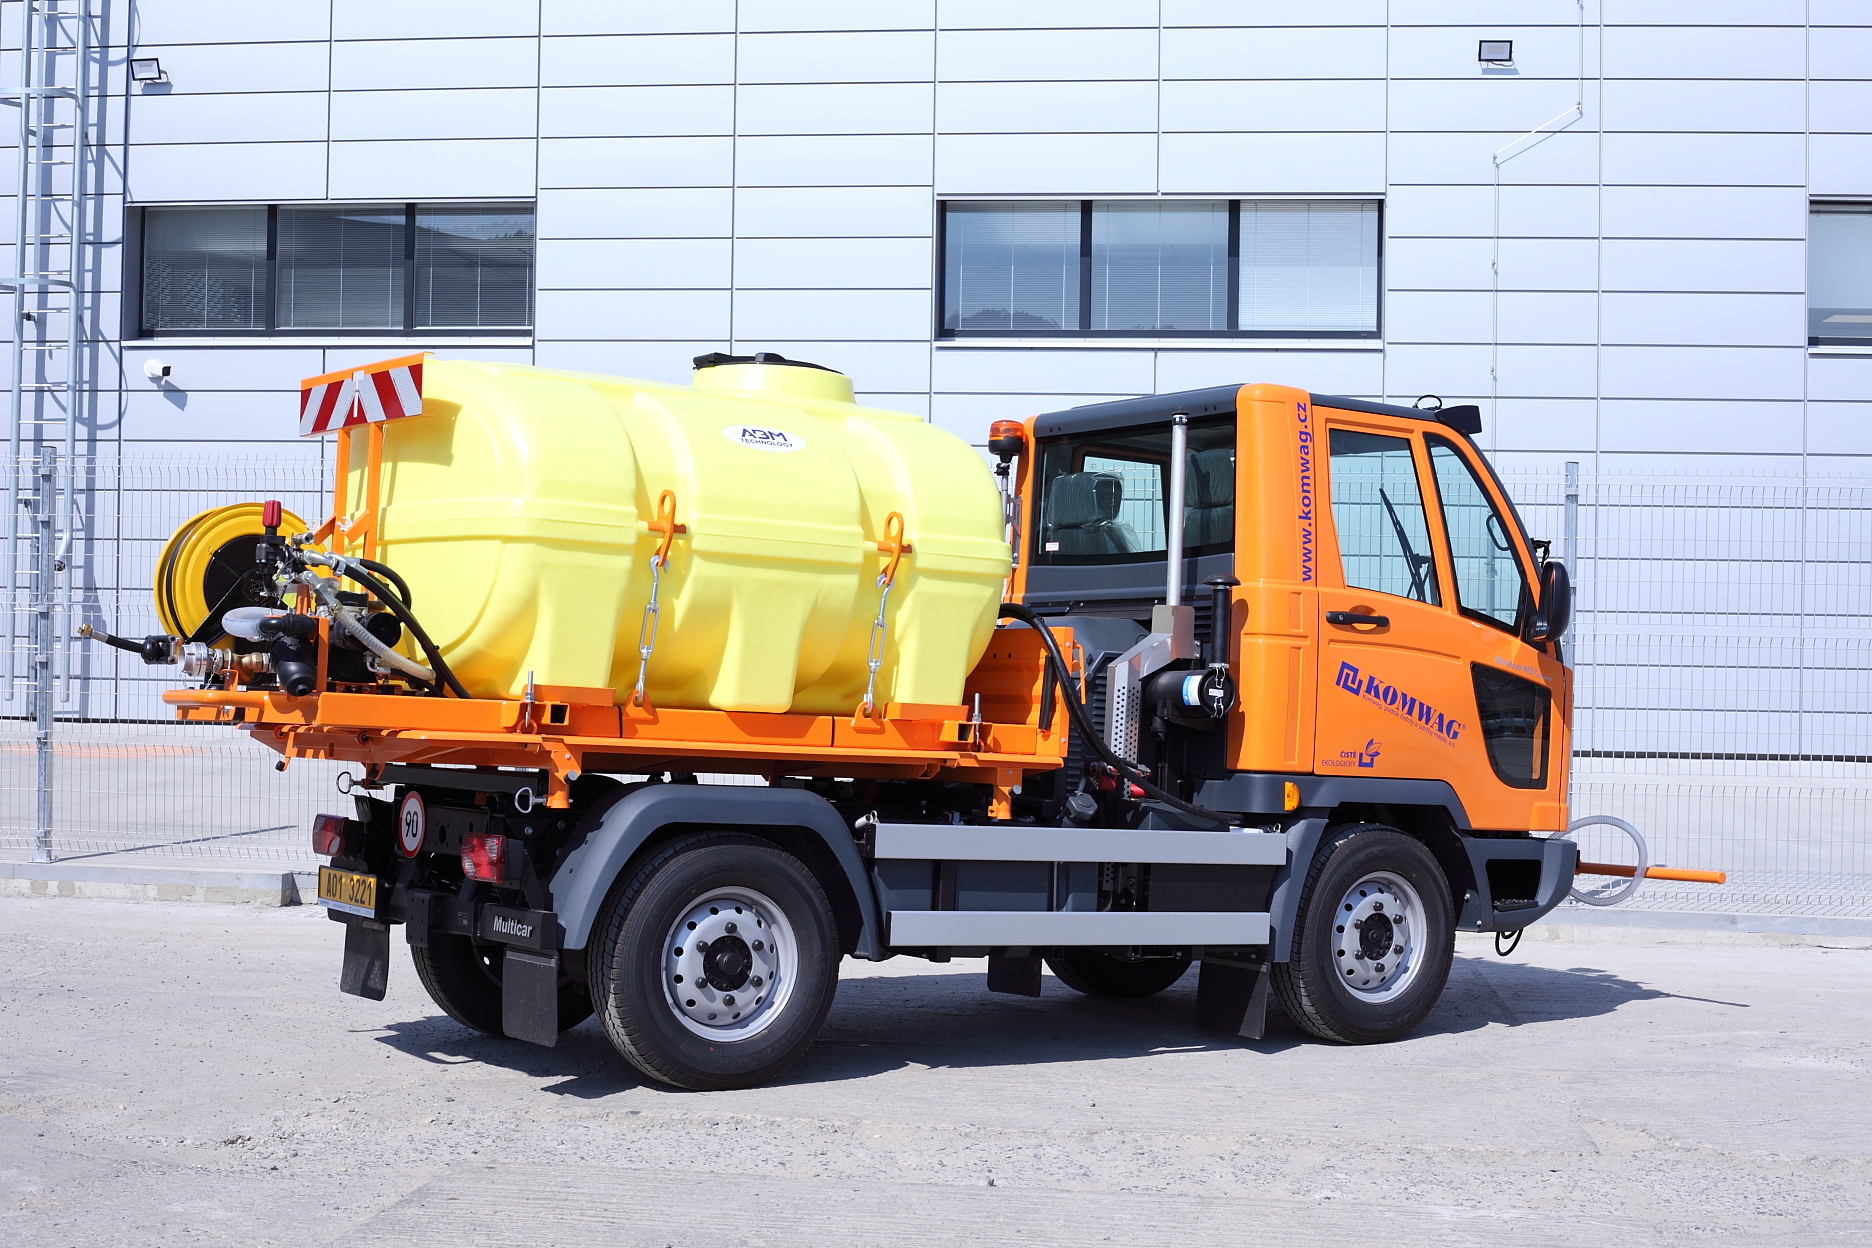 Vodní cisterna CNT2000 s mycí lištou ML1600 na podvozku Multicar M27 compact pro společnost Komwag.